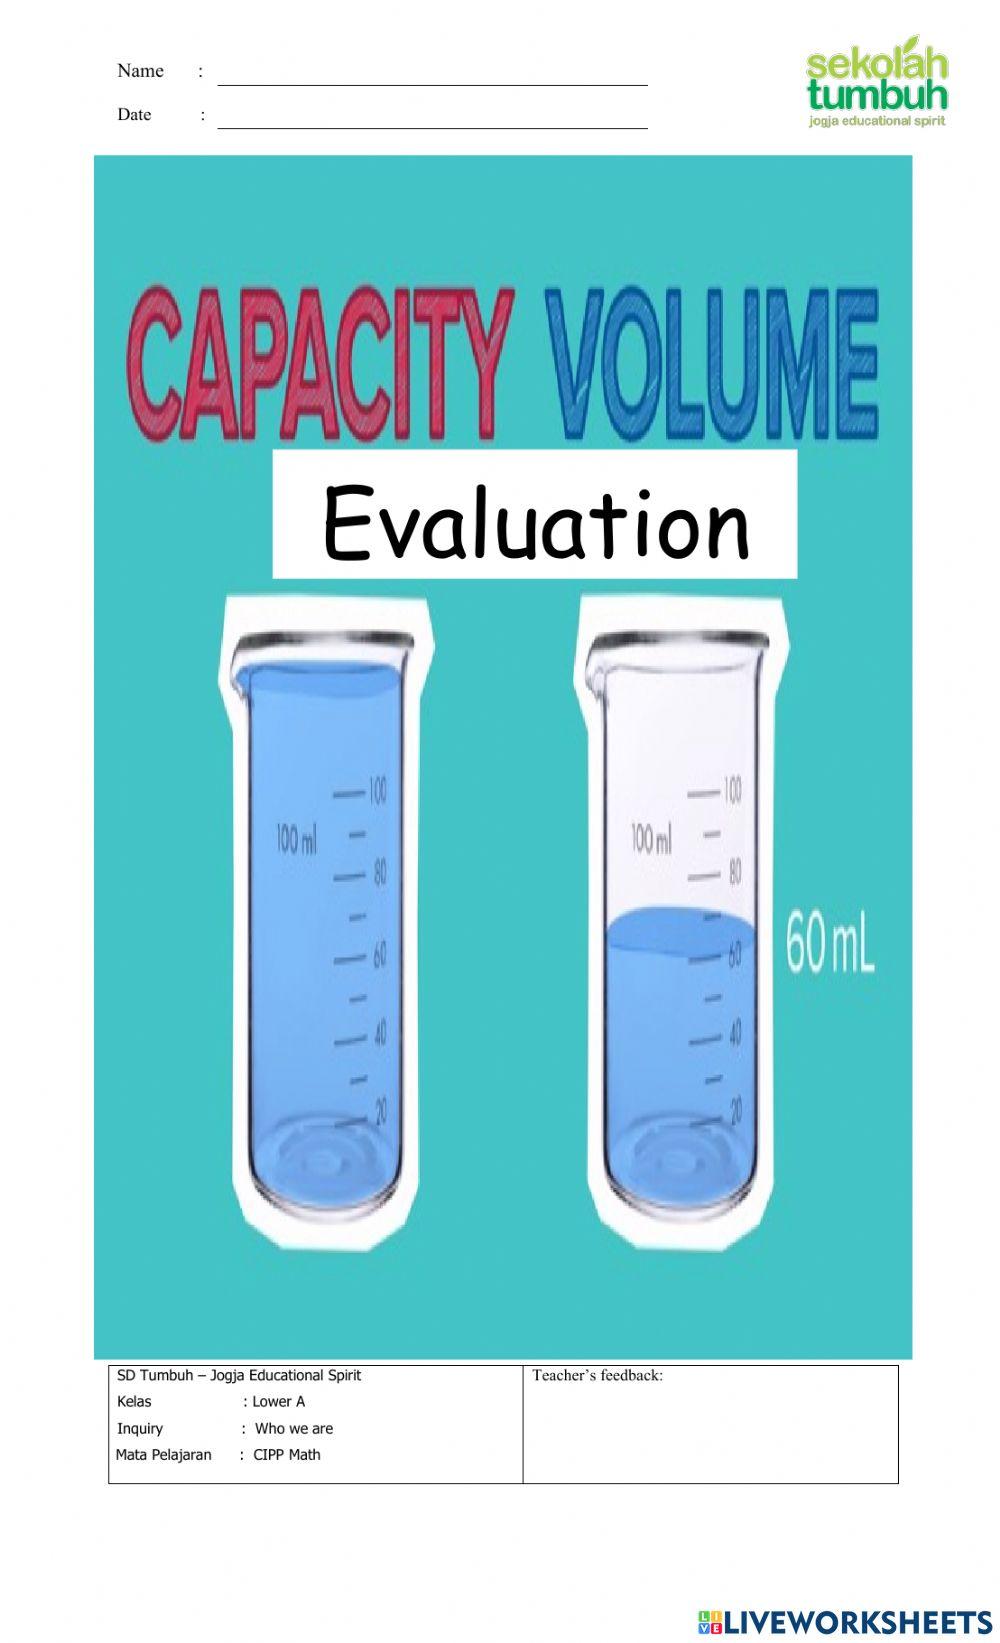 Volume and Capasity-B